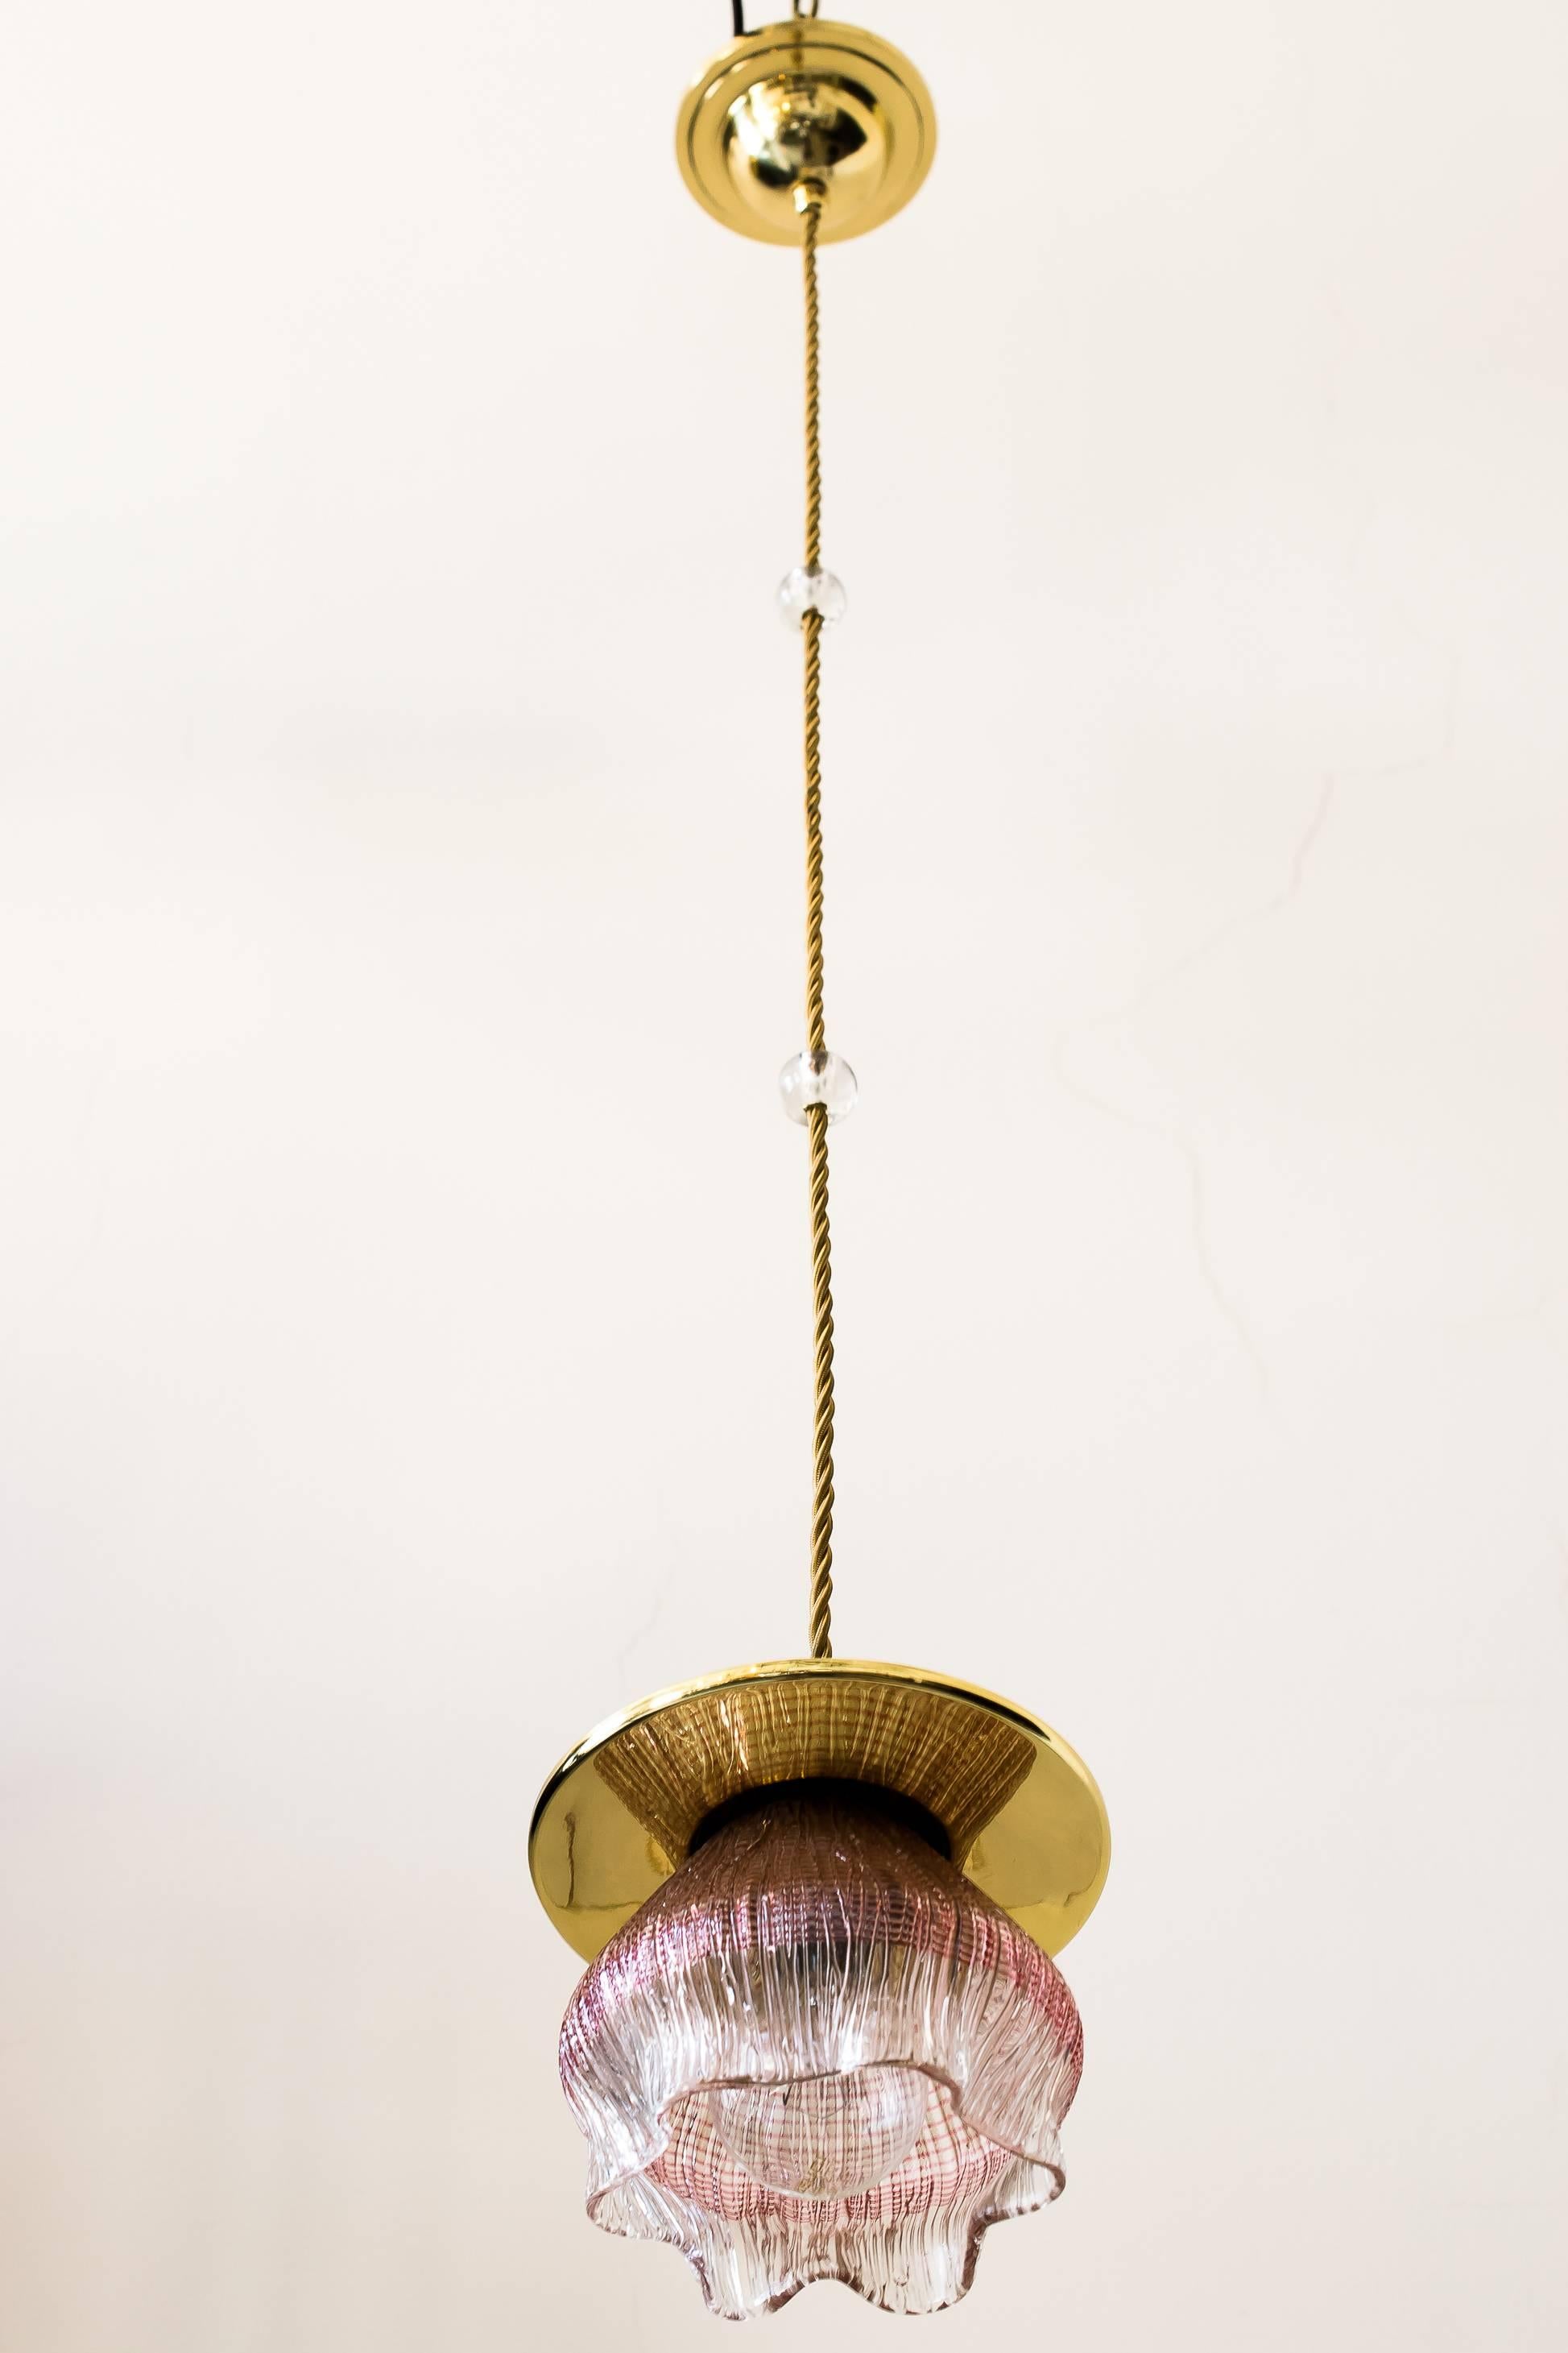 Jugendstil Leopold Bauer Viennese Hanging Lamp with Loetz Witwe “Blitzglas” Shade For Sale